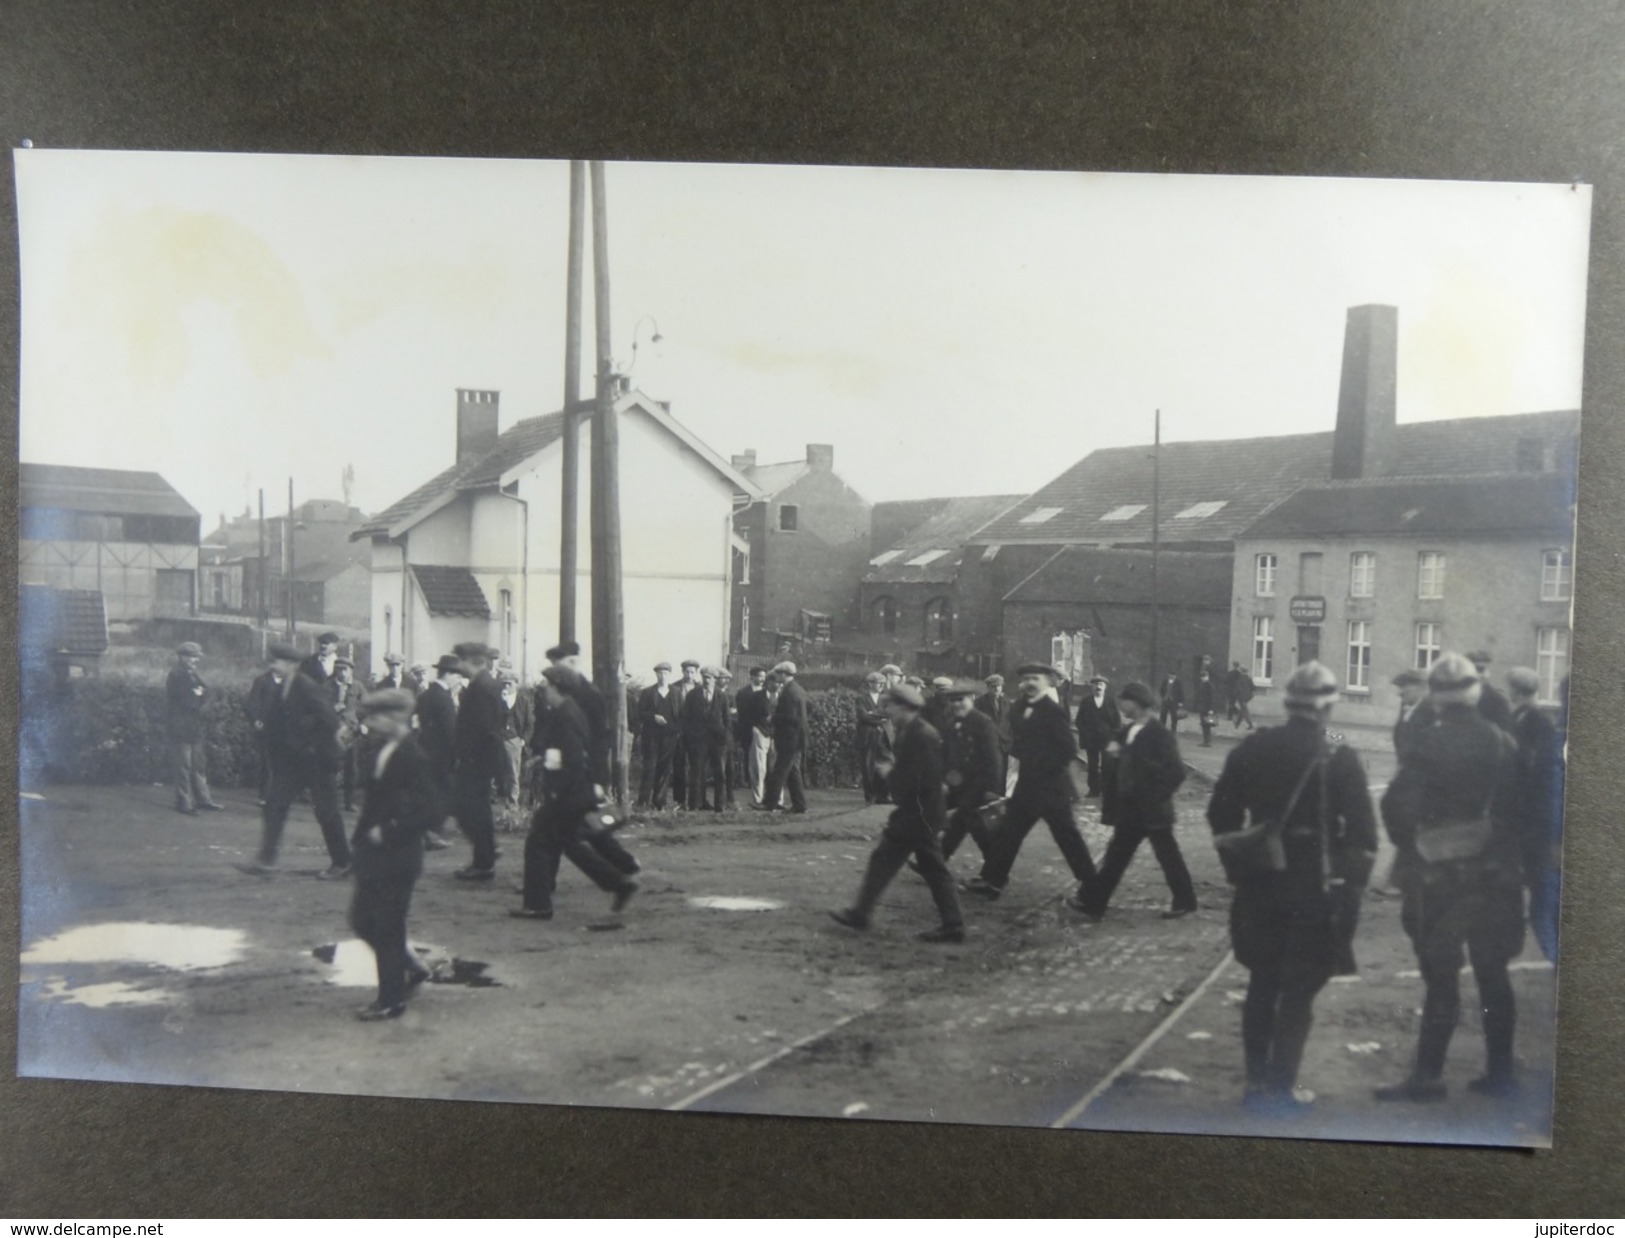 Grèves de Mont-sur-Marchienne 1925 Lot de 14 cartes photos et 38 photos